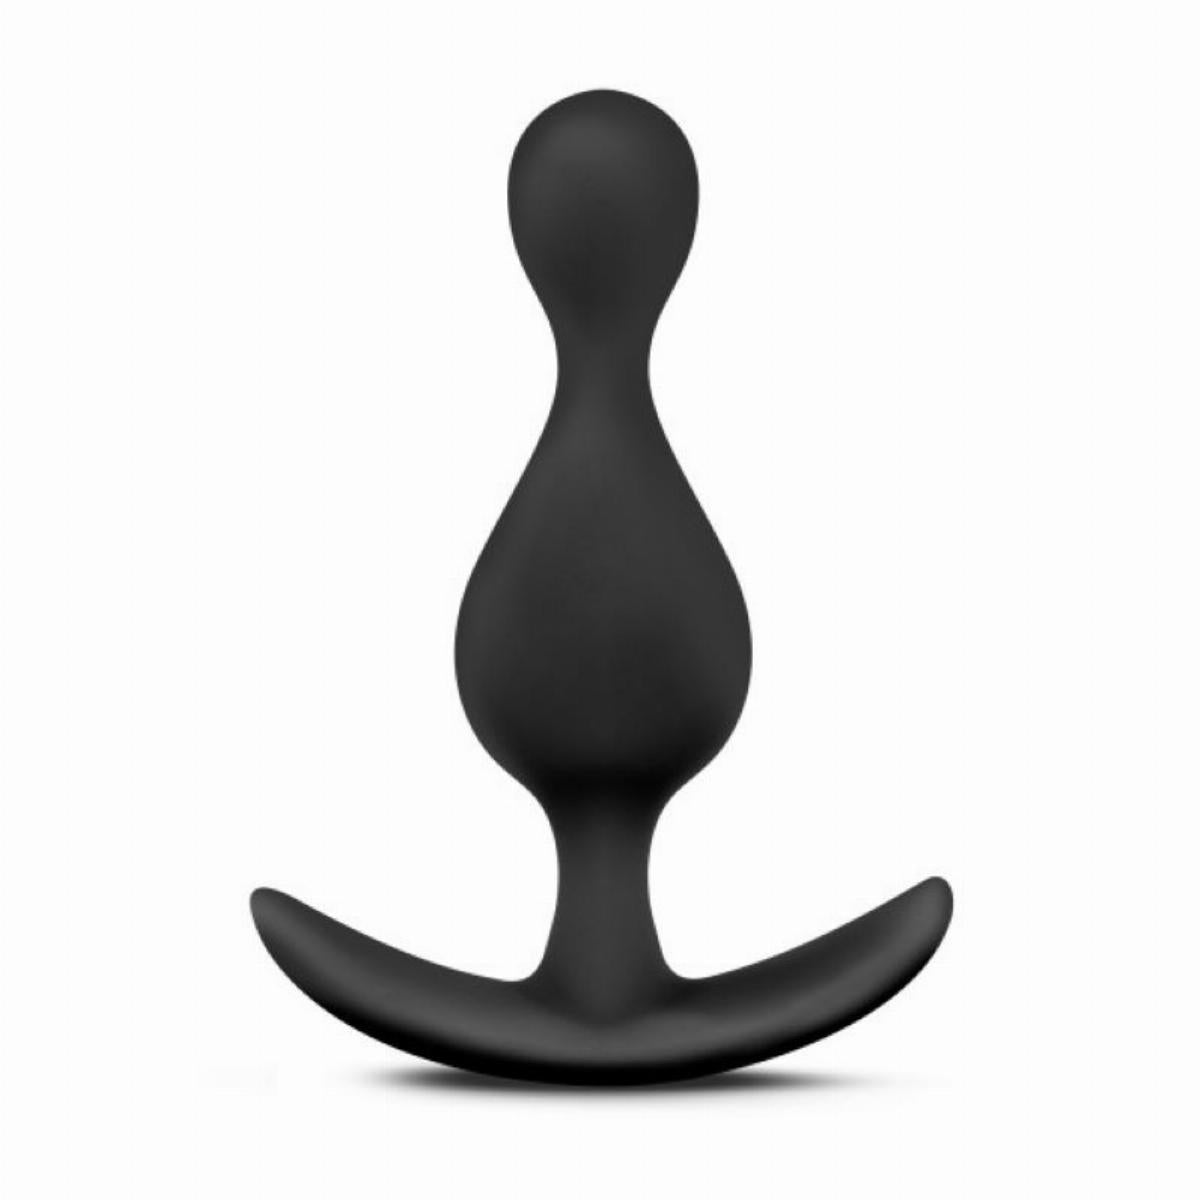 Zwarte butt plug gemaakt van siliconen met een golvend design en breed handvat van het merk Anal Adventures. Deze butt plug is te koop bij Flavourez.